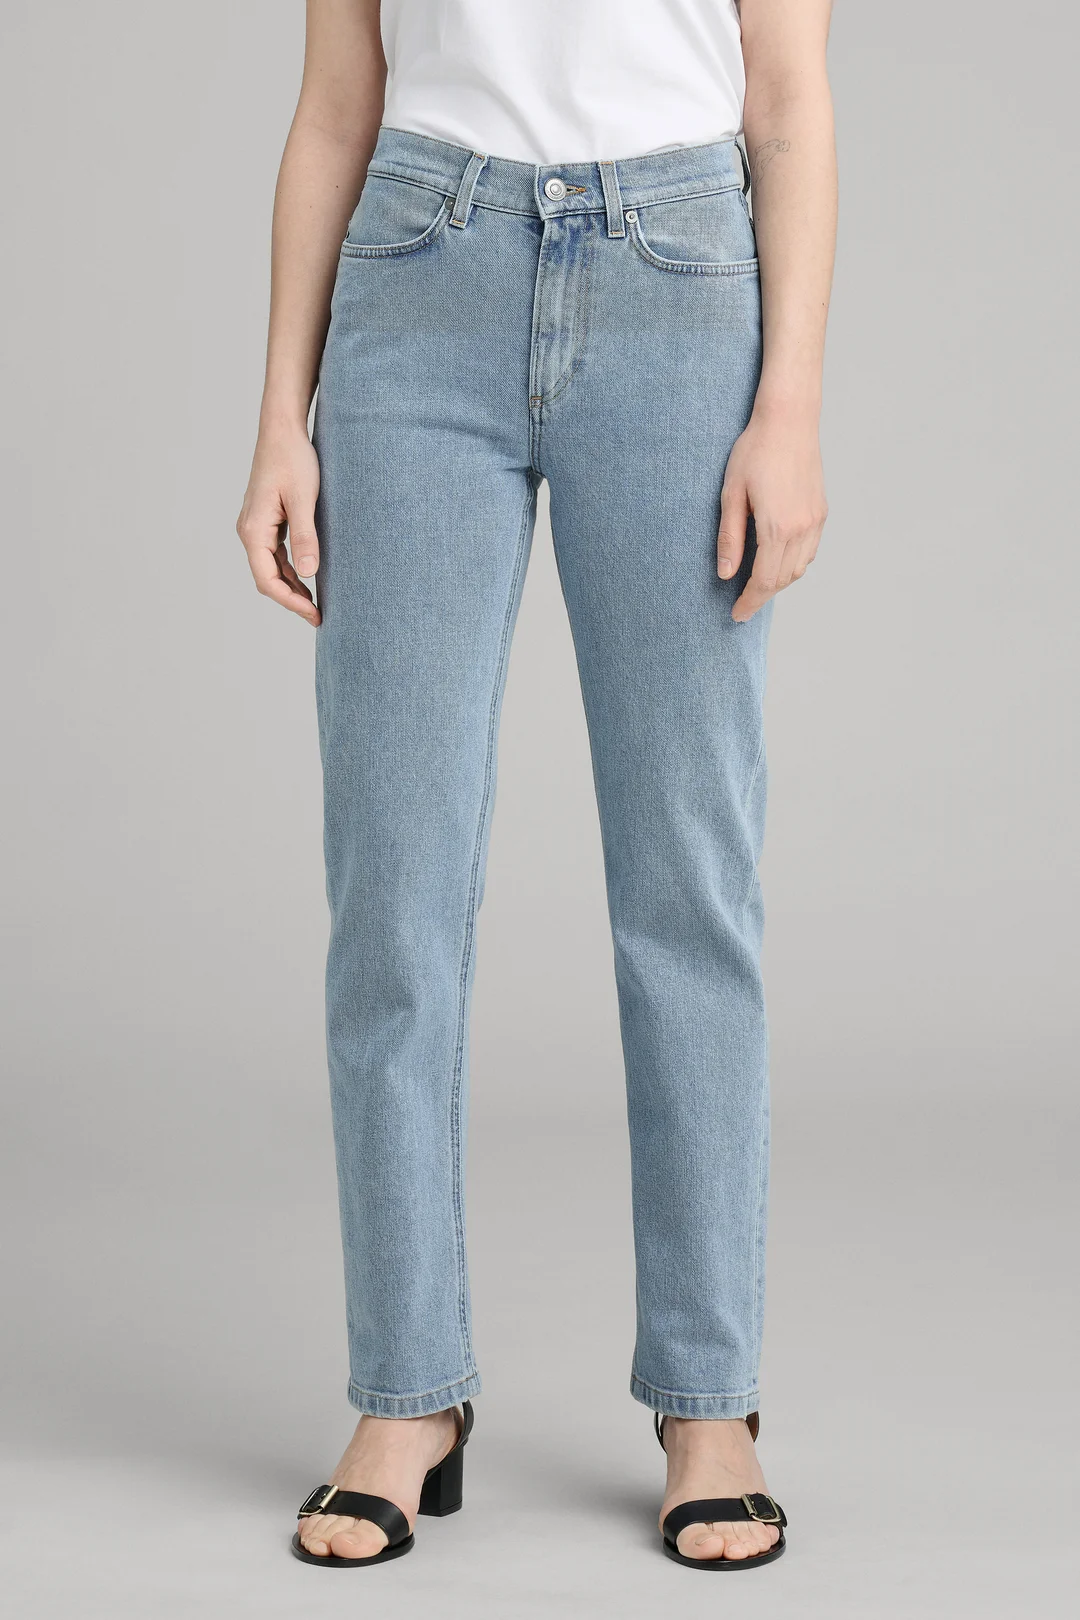 ÃTUDES - Organic Cotton Jeans